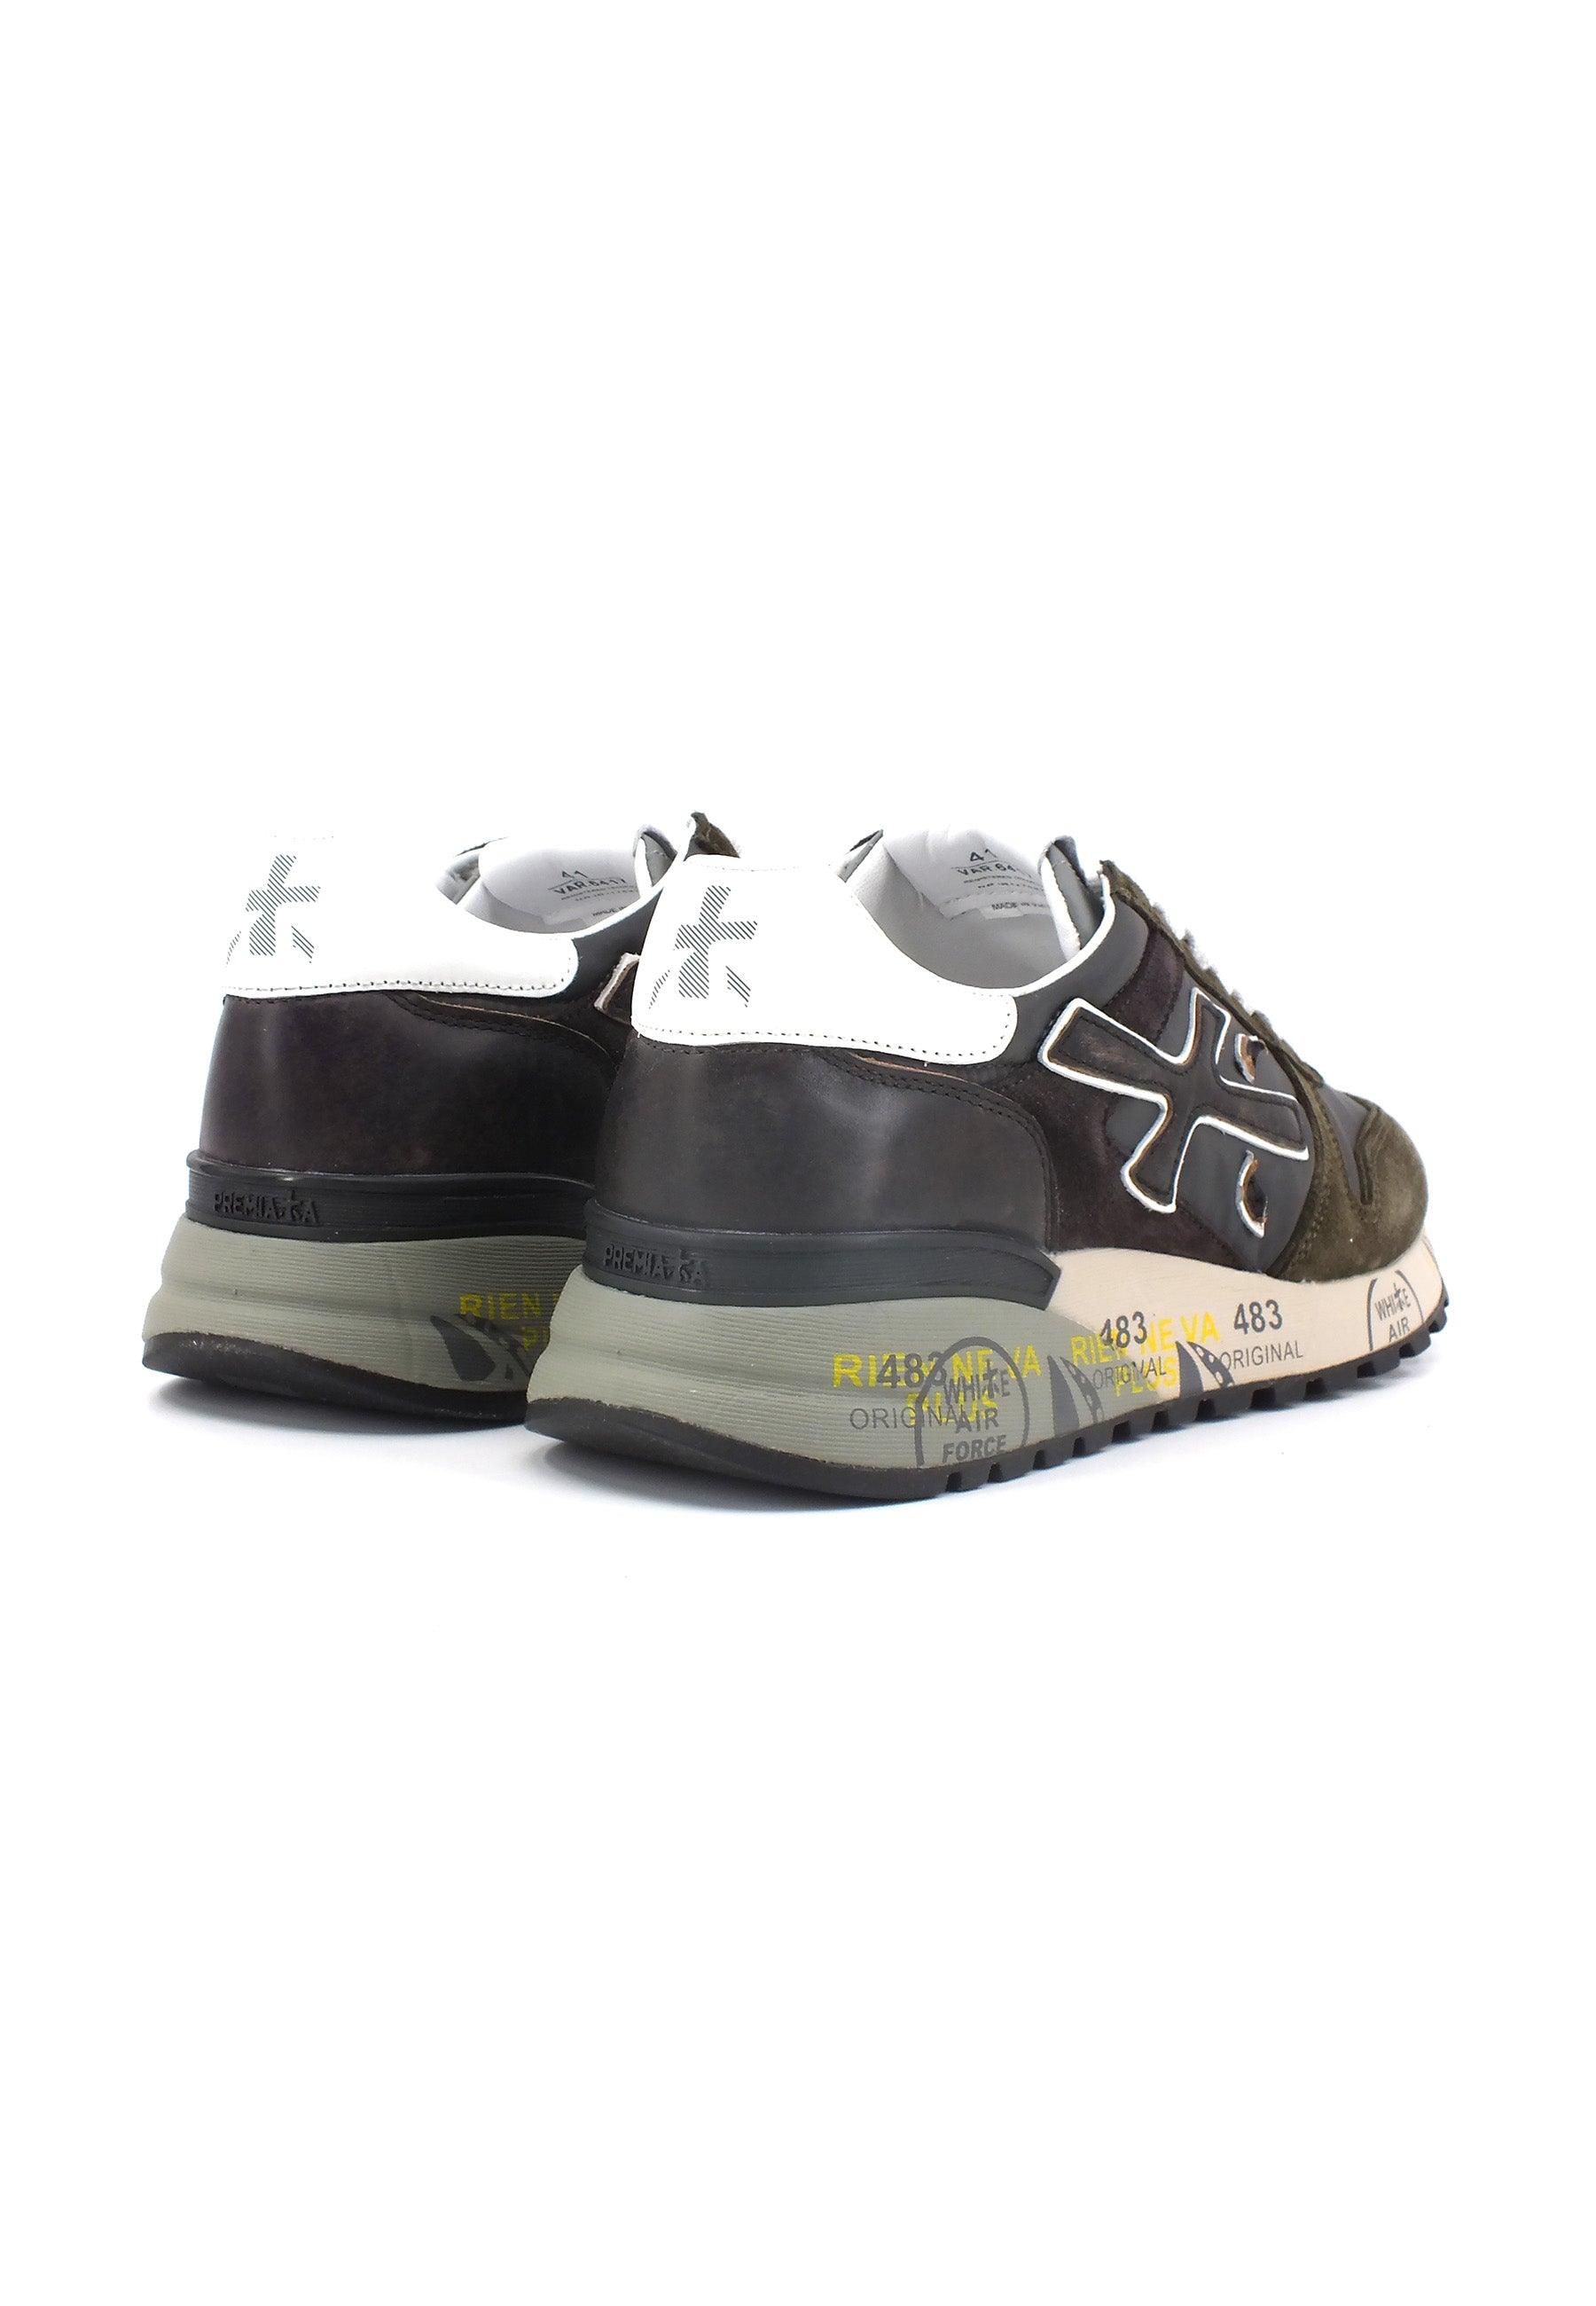 PREMIATA Sneaker Uomo Black Military Green MICK-6417 - Sandrini Calzature e Abbigliamento